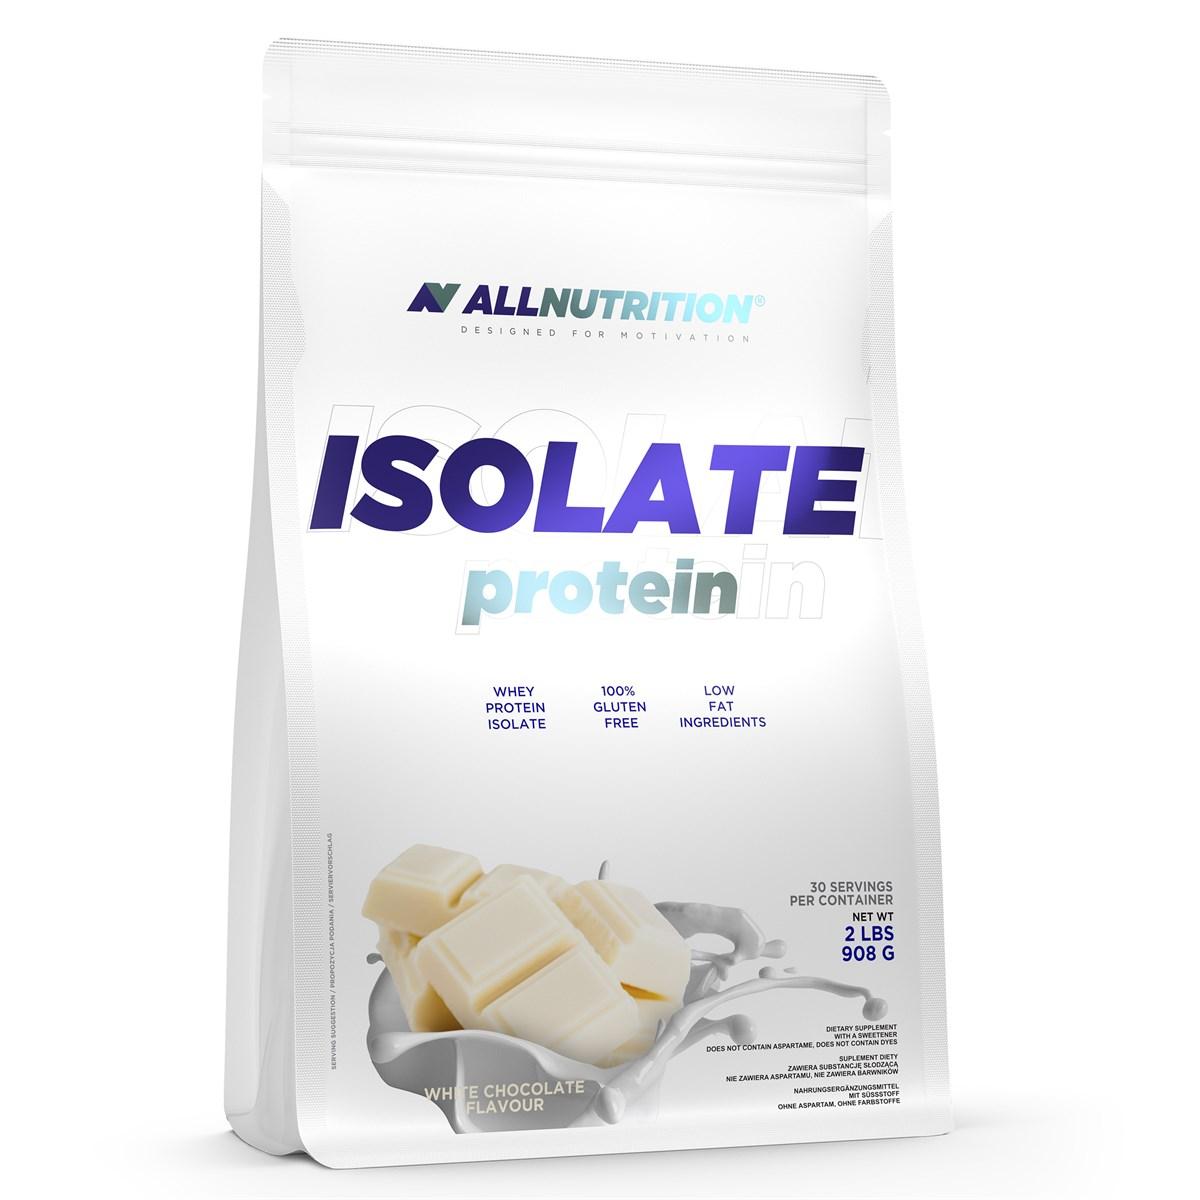 Сывороточный протеин изолят AllNutrition Isolate Protein (908 г) алл нутришн White Chocolate Raspberry,  мл, AllNutrition. Сывороточный изолят. Сухая мышечная масса Снижение веса Восстановление Антикатаболические свойства 